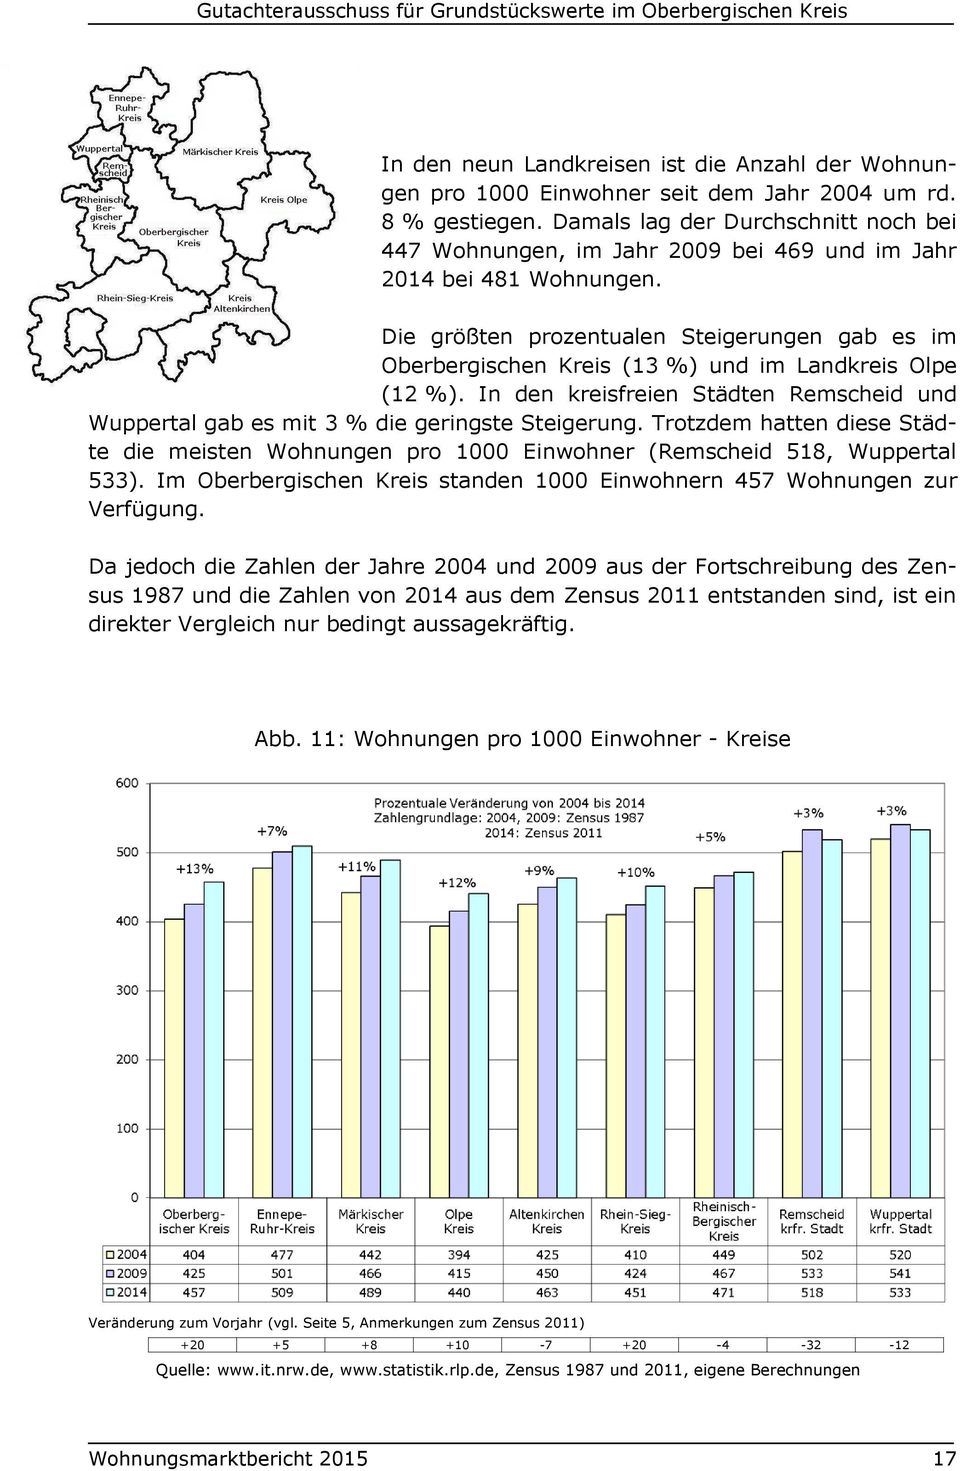 Die größten prozentualen Steigerungen gab es im Oberbergischen Kreis (13 %) und im Landkreis Olpe (12 %). In den kreisfreien Städten Remscheid und Wuppertal gab es mit 3 % die geringste Steigerung.